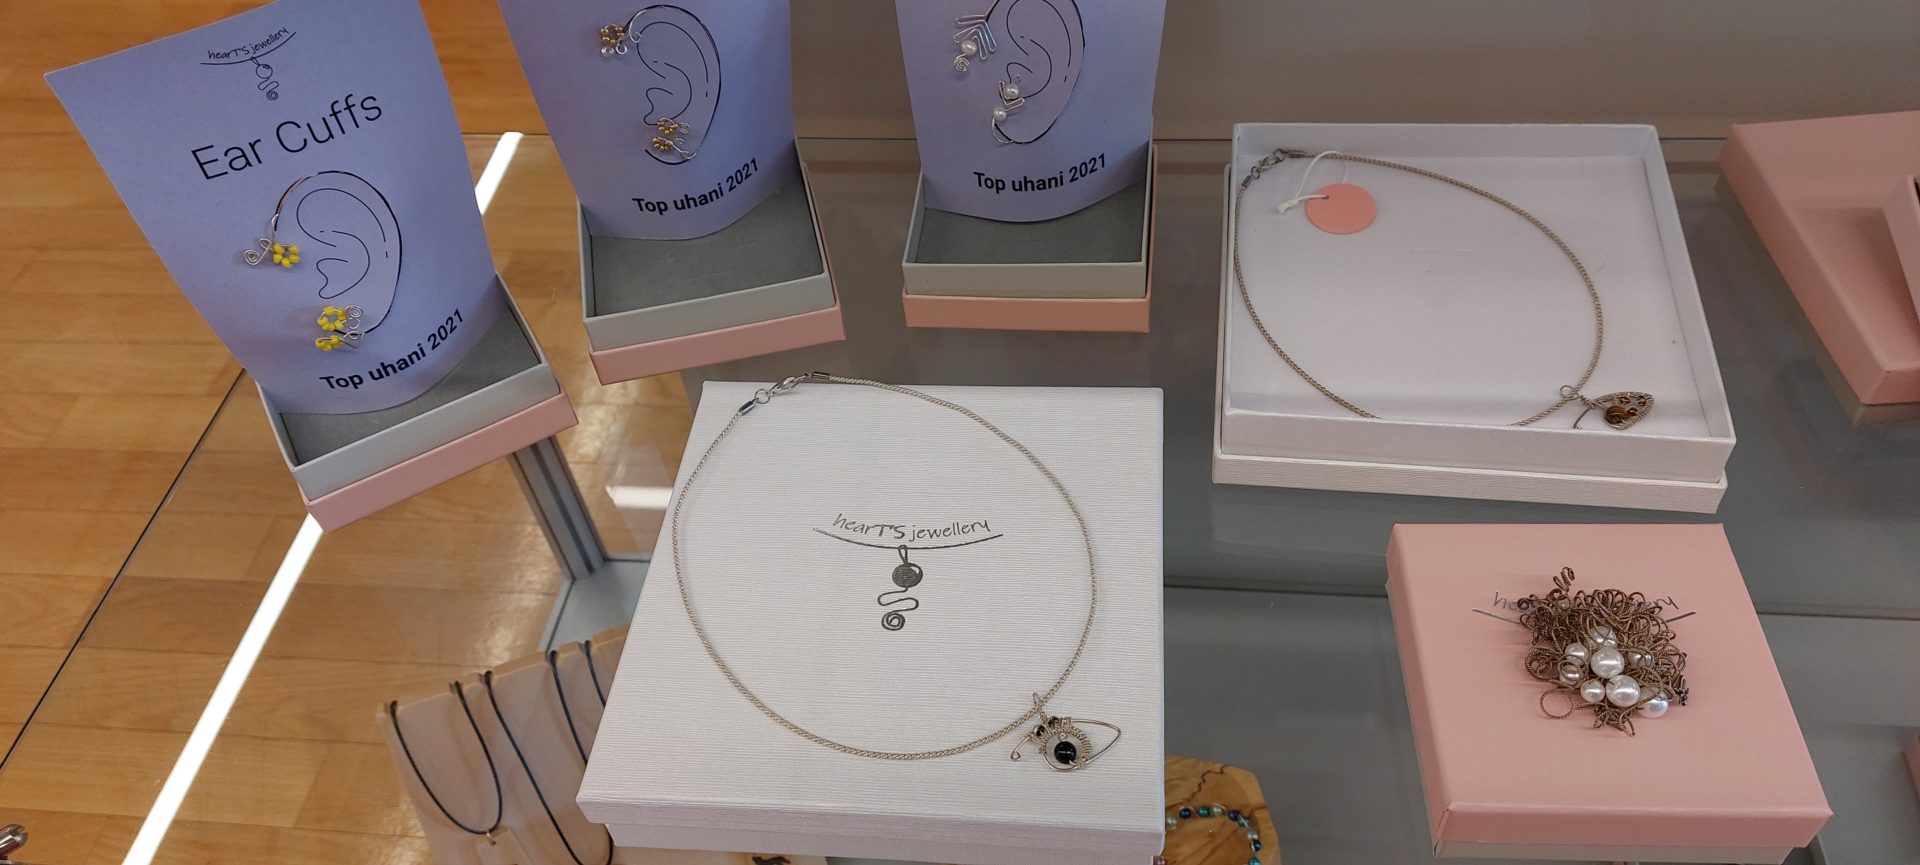 20220423 104349 - Heart's jewellery - razstava kvačkanega nakita iz žice in pletene žice ustvarjalke Tine Sterle